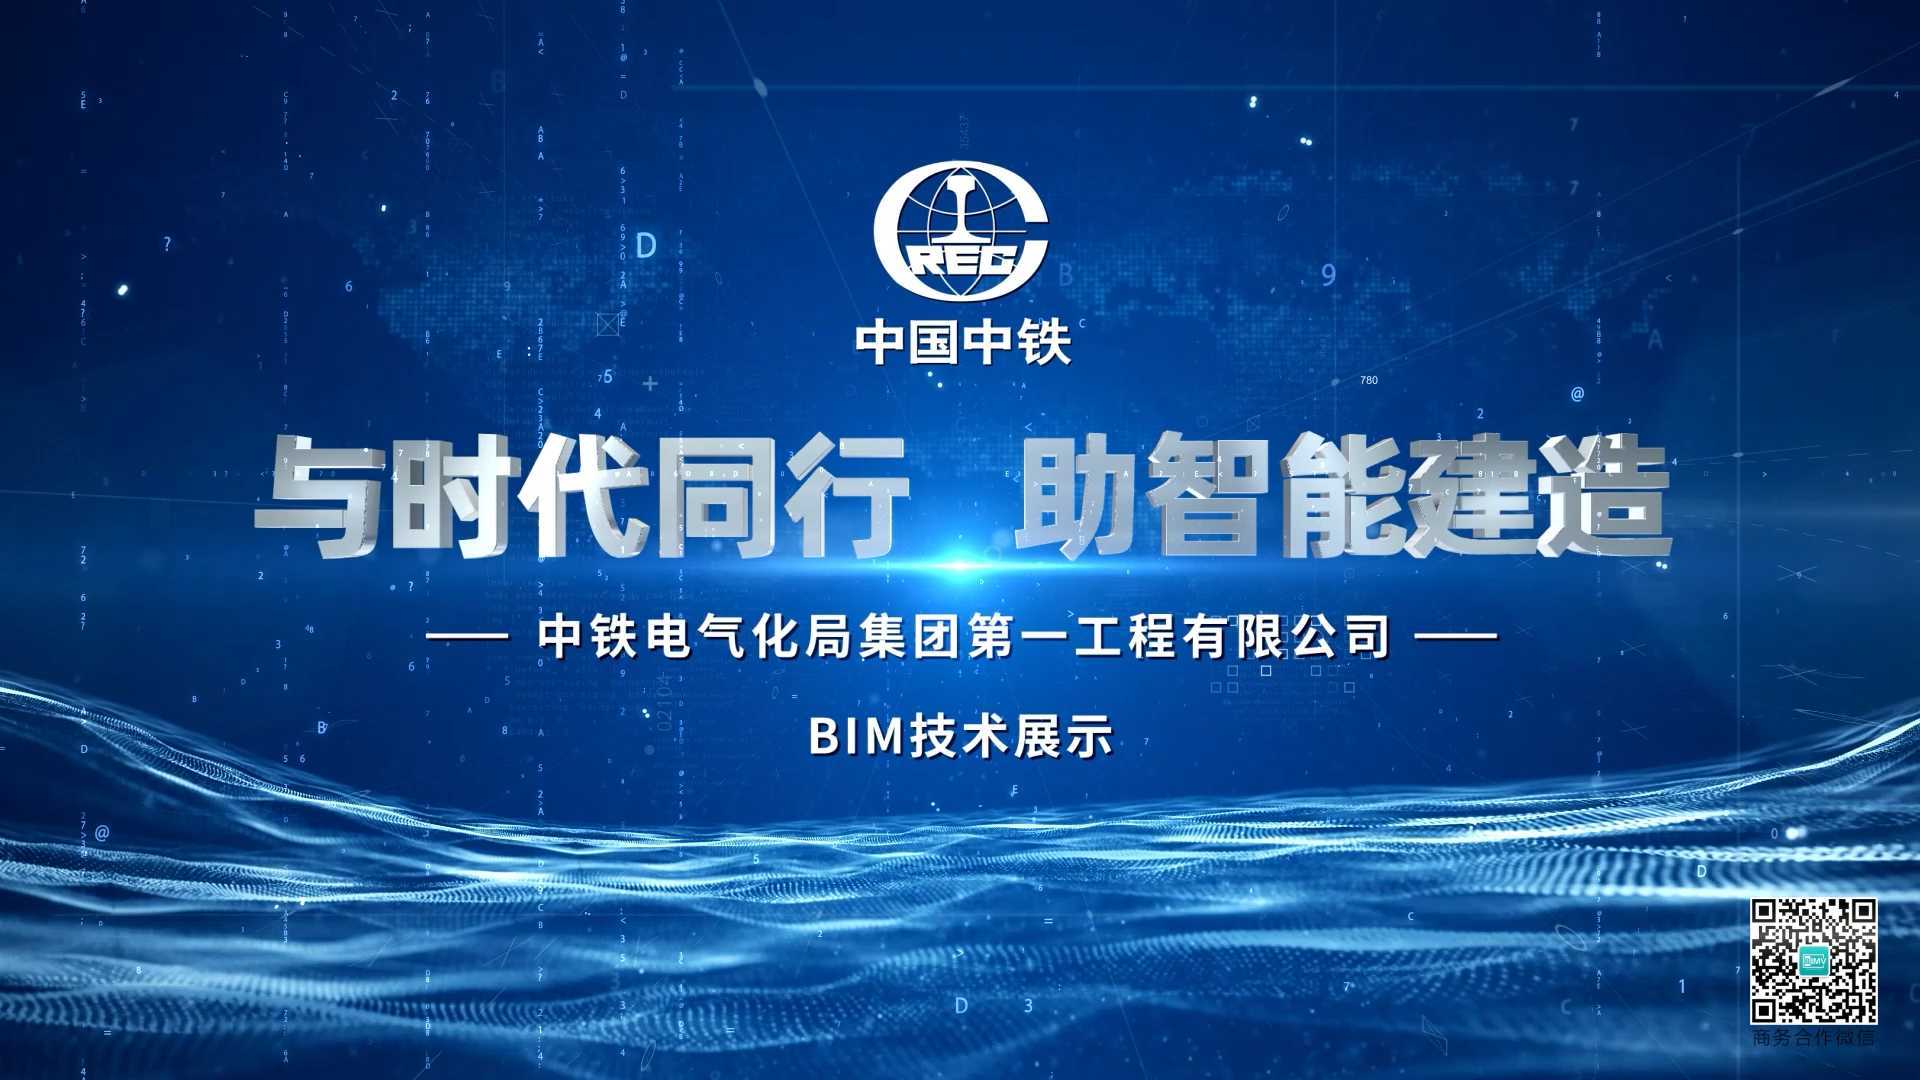 中铁电气化局一公司 BIM宣传片